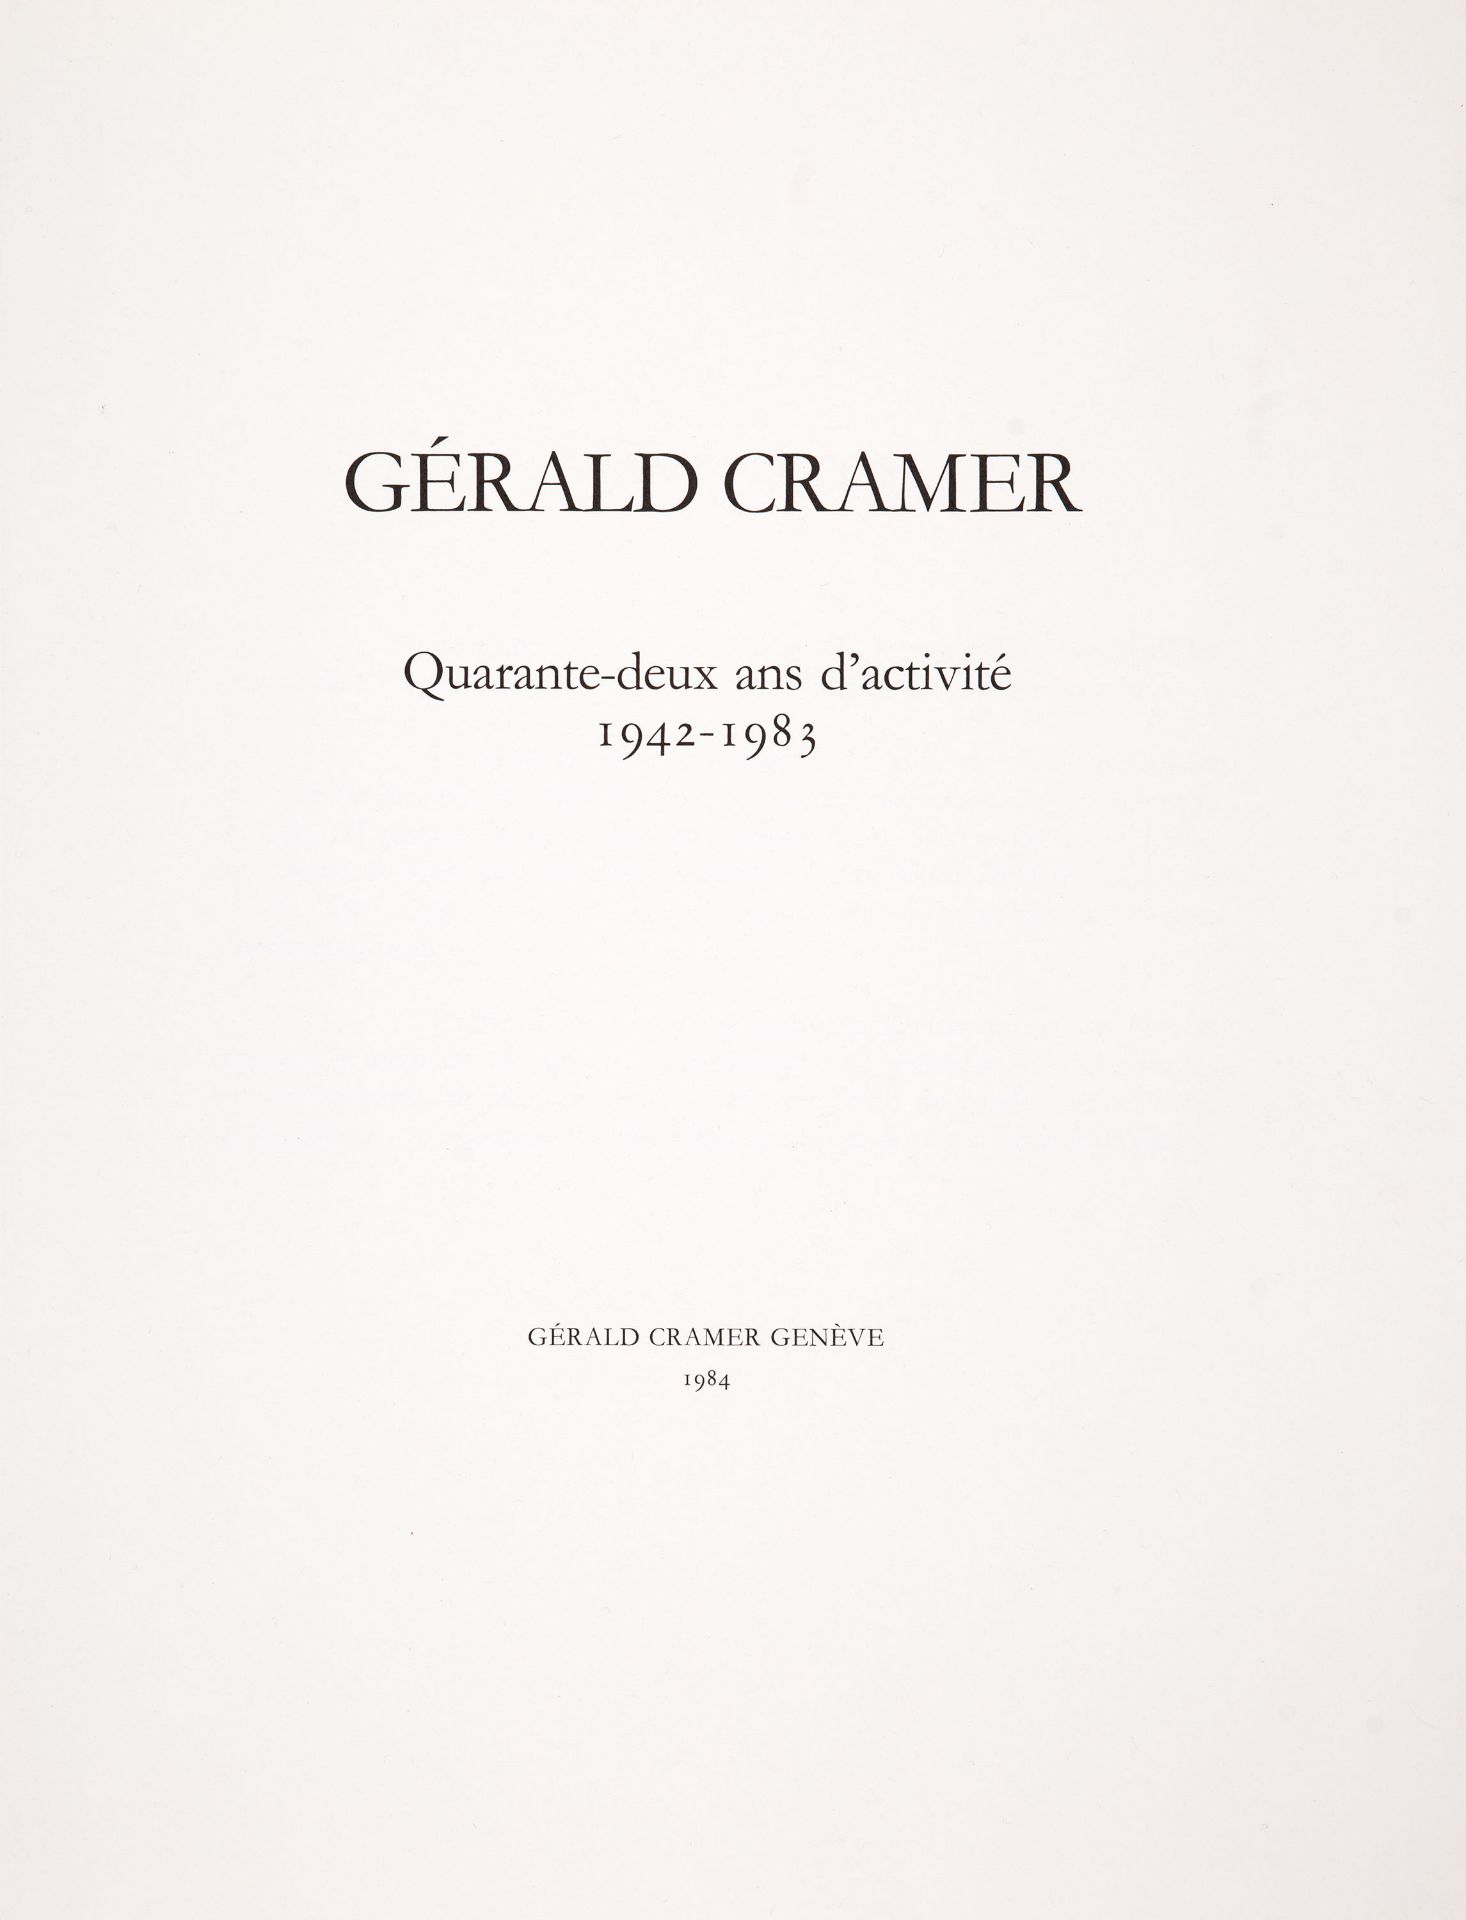 G. Cramer / H. Moore, Quarante-deux ans activité 1942-1983. Genf 1984. - Hefte I u. II - Ex. röm. 45